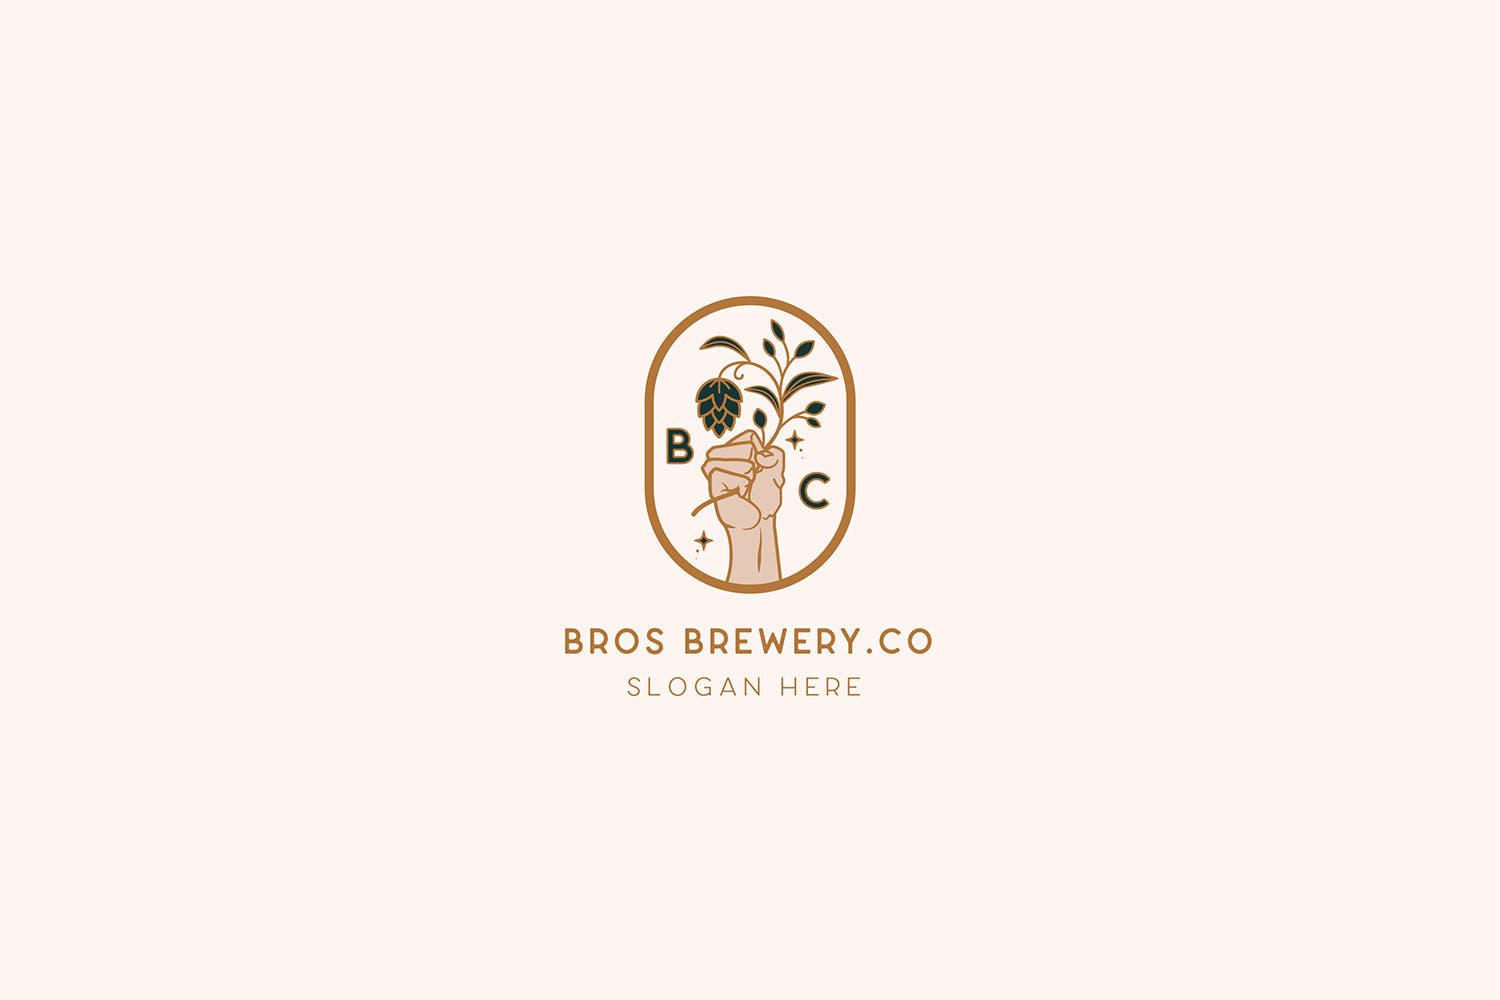 咖啡/啤酒品牌Logo设计非凡图库精选模板 Brewery Brotherhood cafe beer Logo Template插图(1)